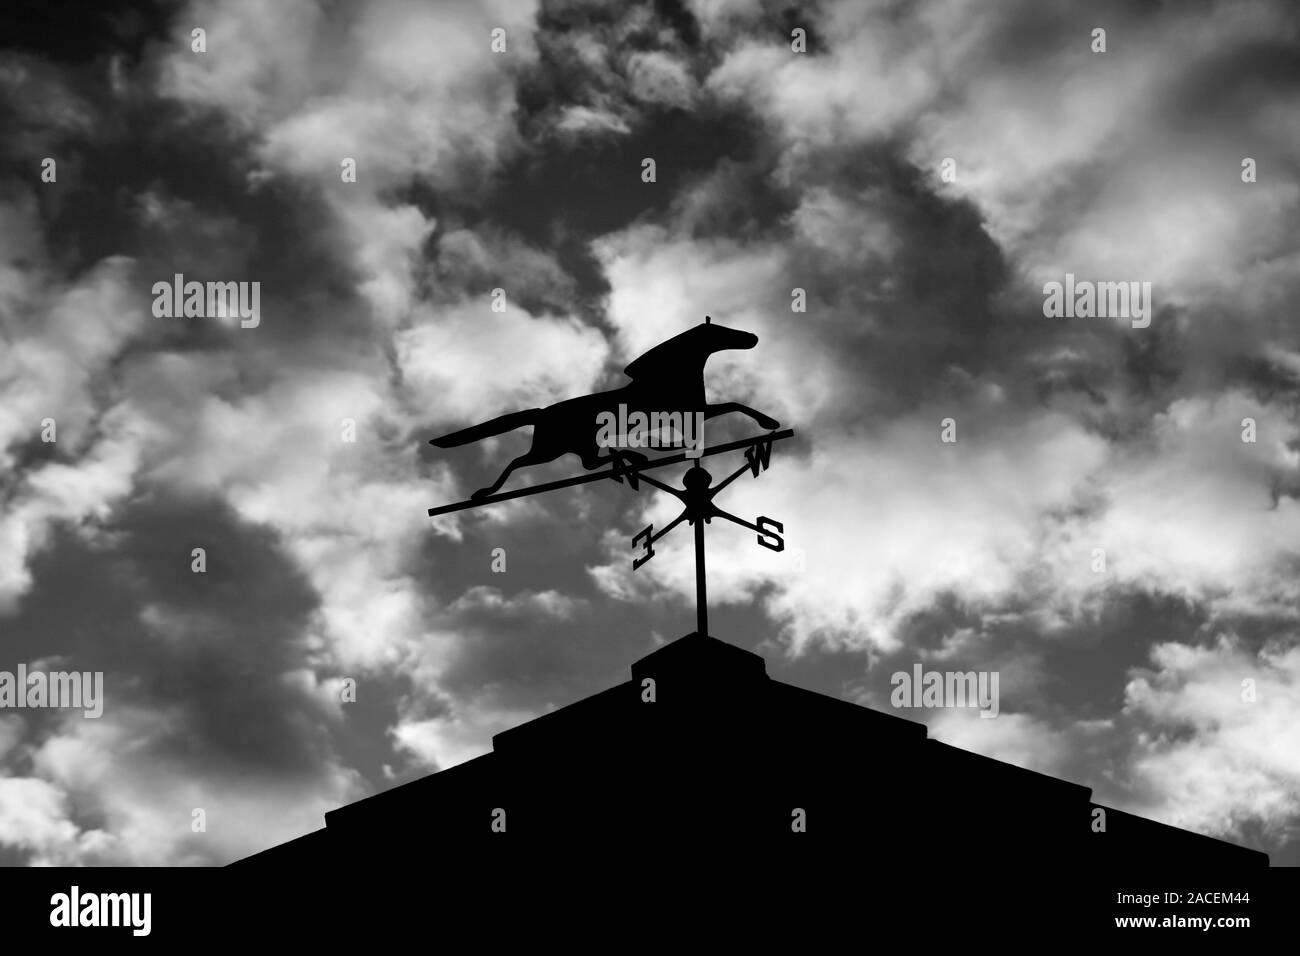 Schwarz-weiß-Bild eines Pferdes weathervane gegen einen bewölkten Himmel Silhouette Stockfoto